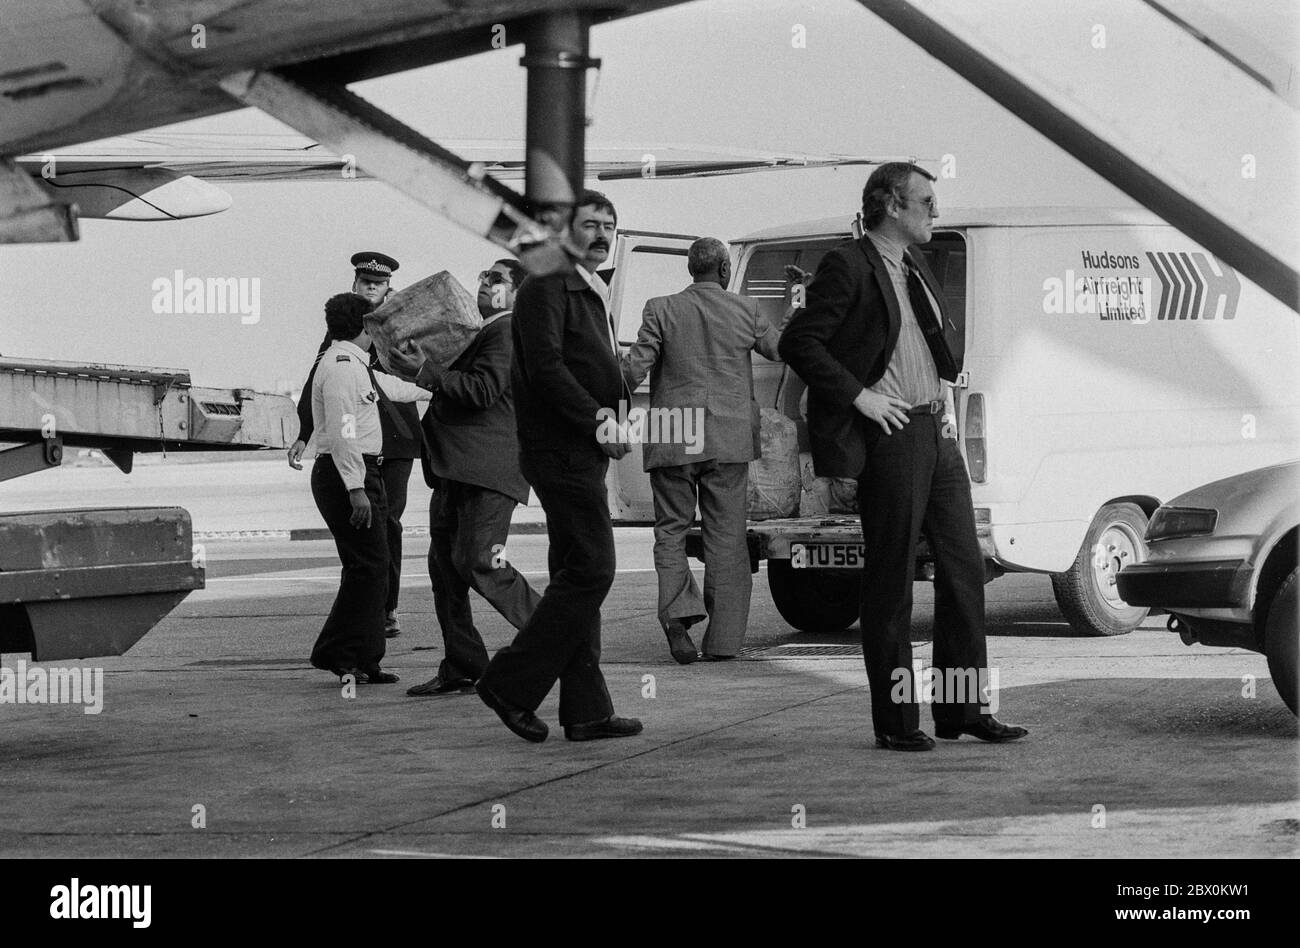 Un cittadino libico viene deportato dal Regno Unito da funzionari di ufficio dall'ufficio di registrazione degli stranieri in seguito all'assassinio della poliziotto Yvonne Fletcher, in strada, da un incendio a macchina fuori dall'ambasciata libica a Londra, e all'attentato terroristico all'aeroporto di Heathrow nell'aprile 1984. Foto Stock